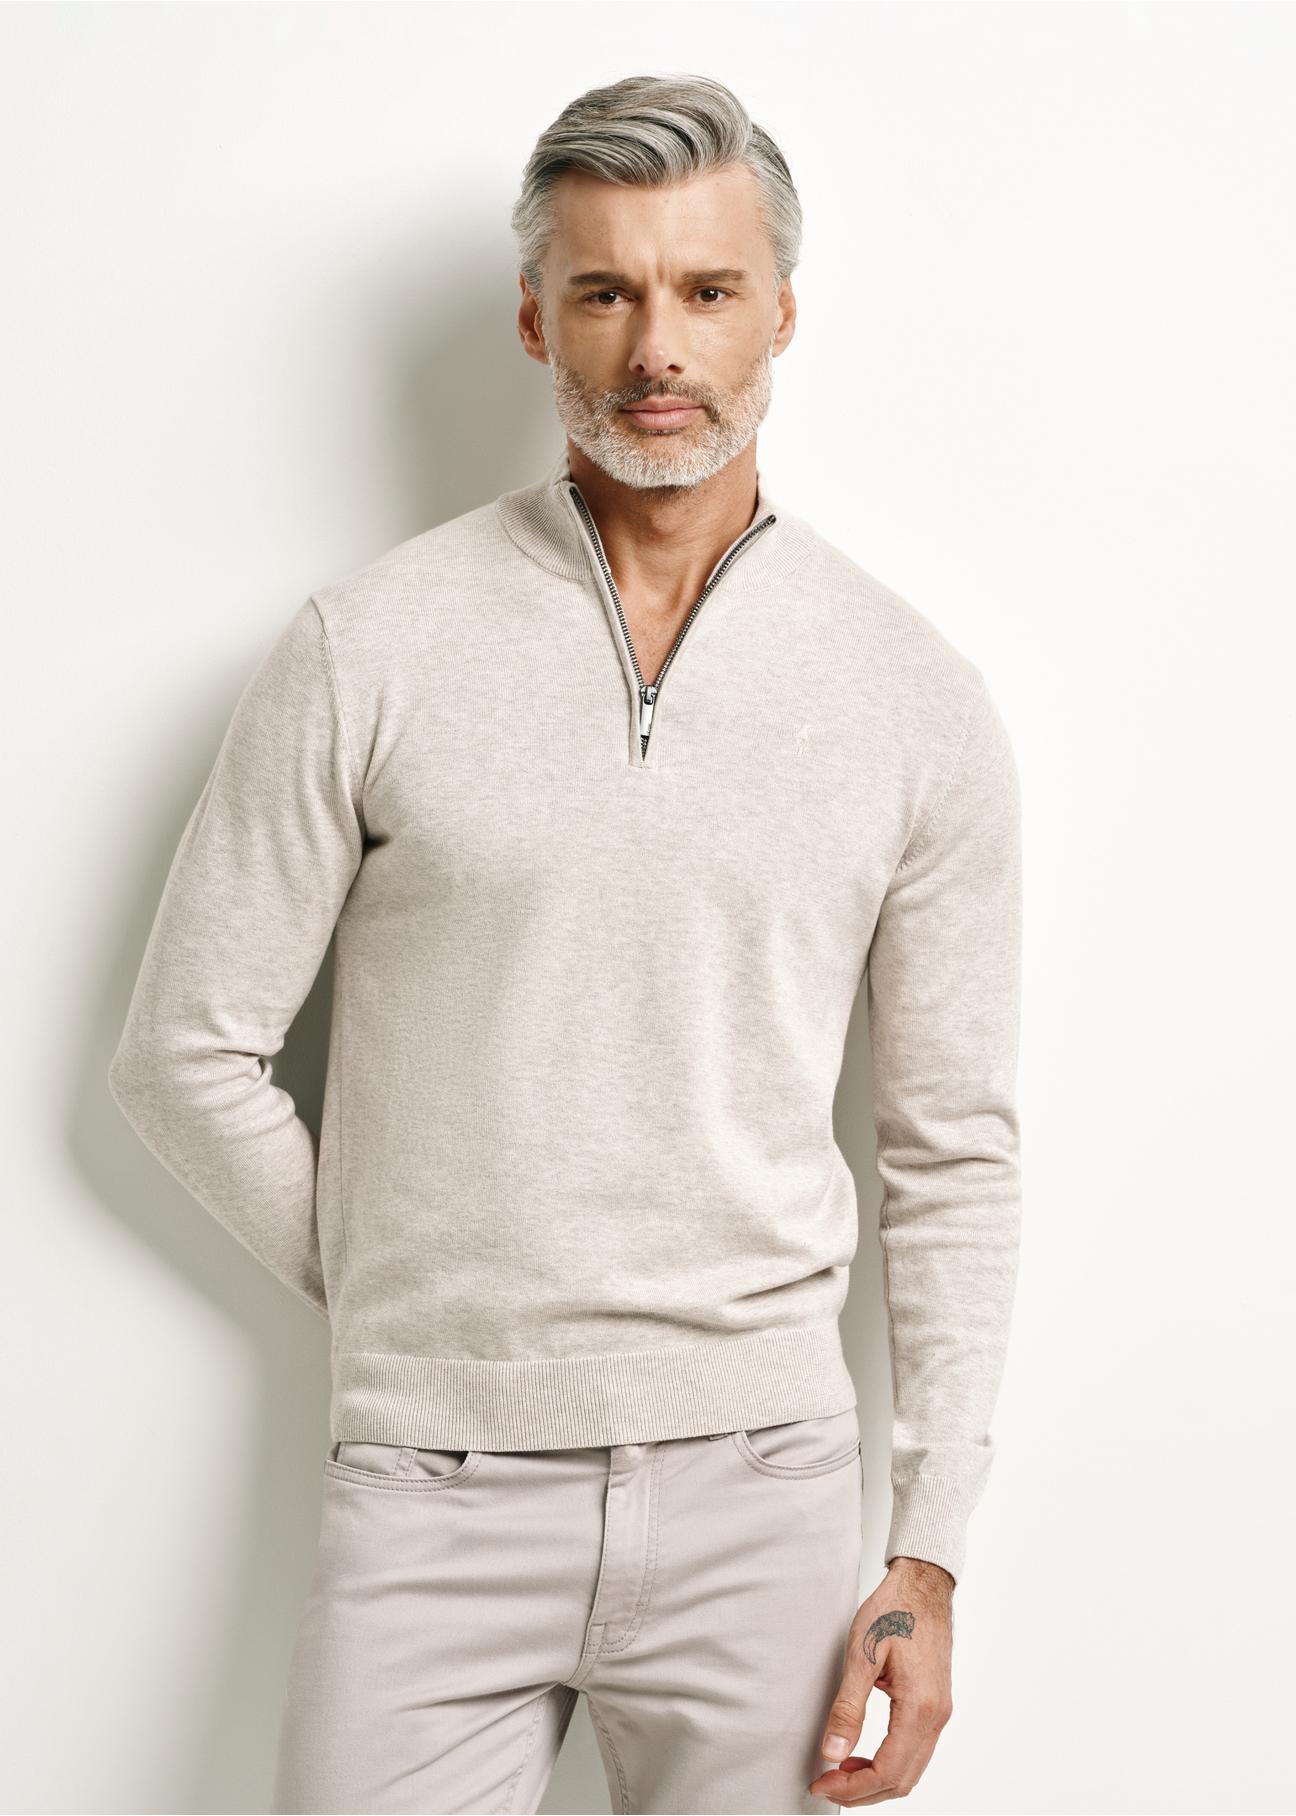 Beżowy bawełniany sweter męski SWEMT-0144-80(W24)